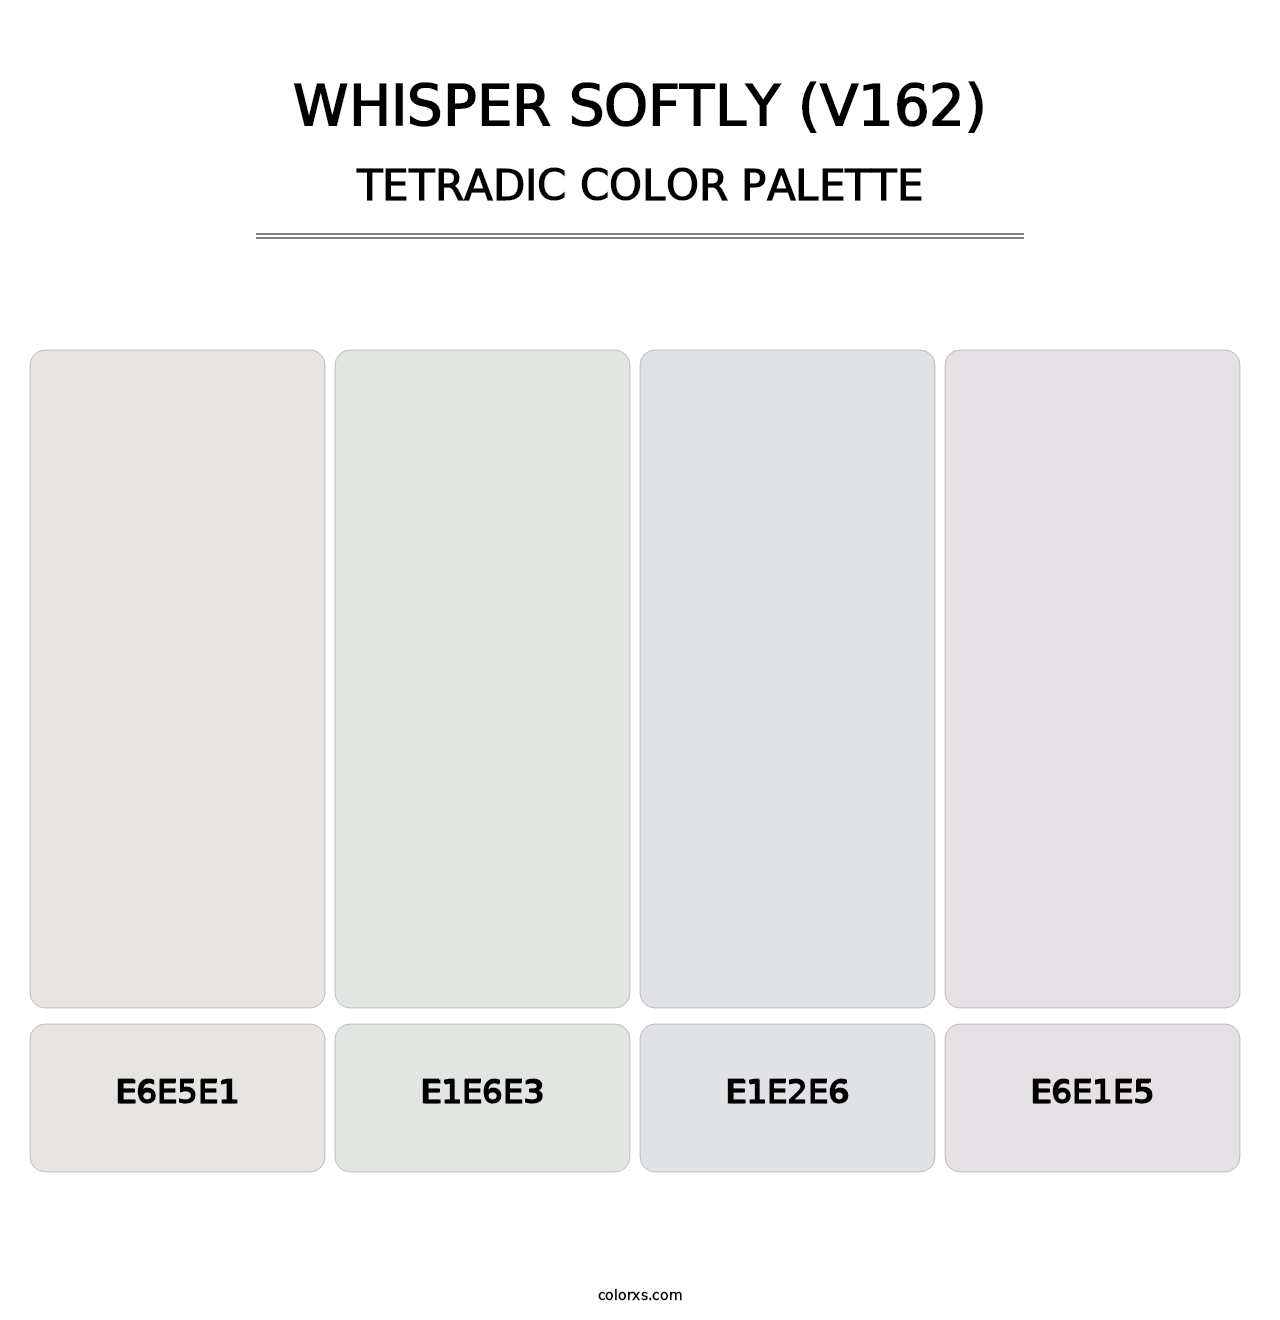 Whisper Softly (V162) - Tetradic Color Palette